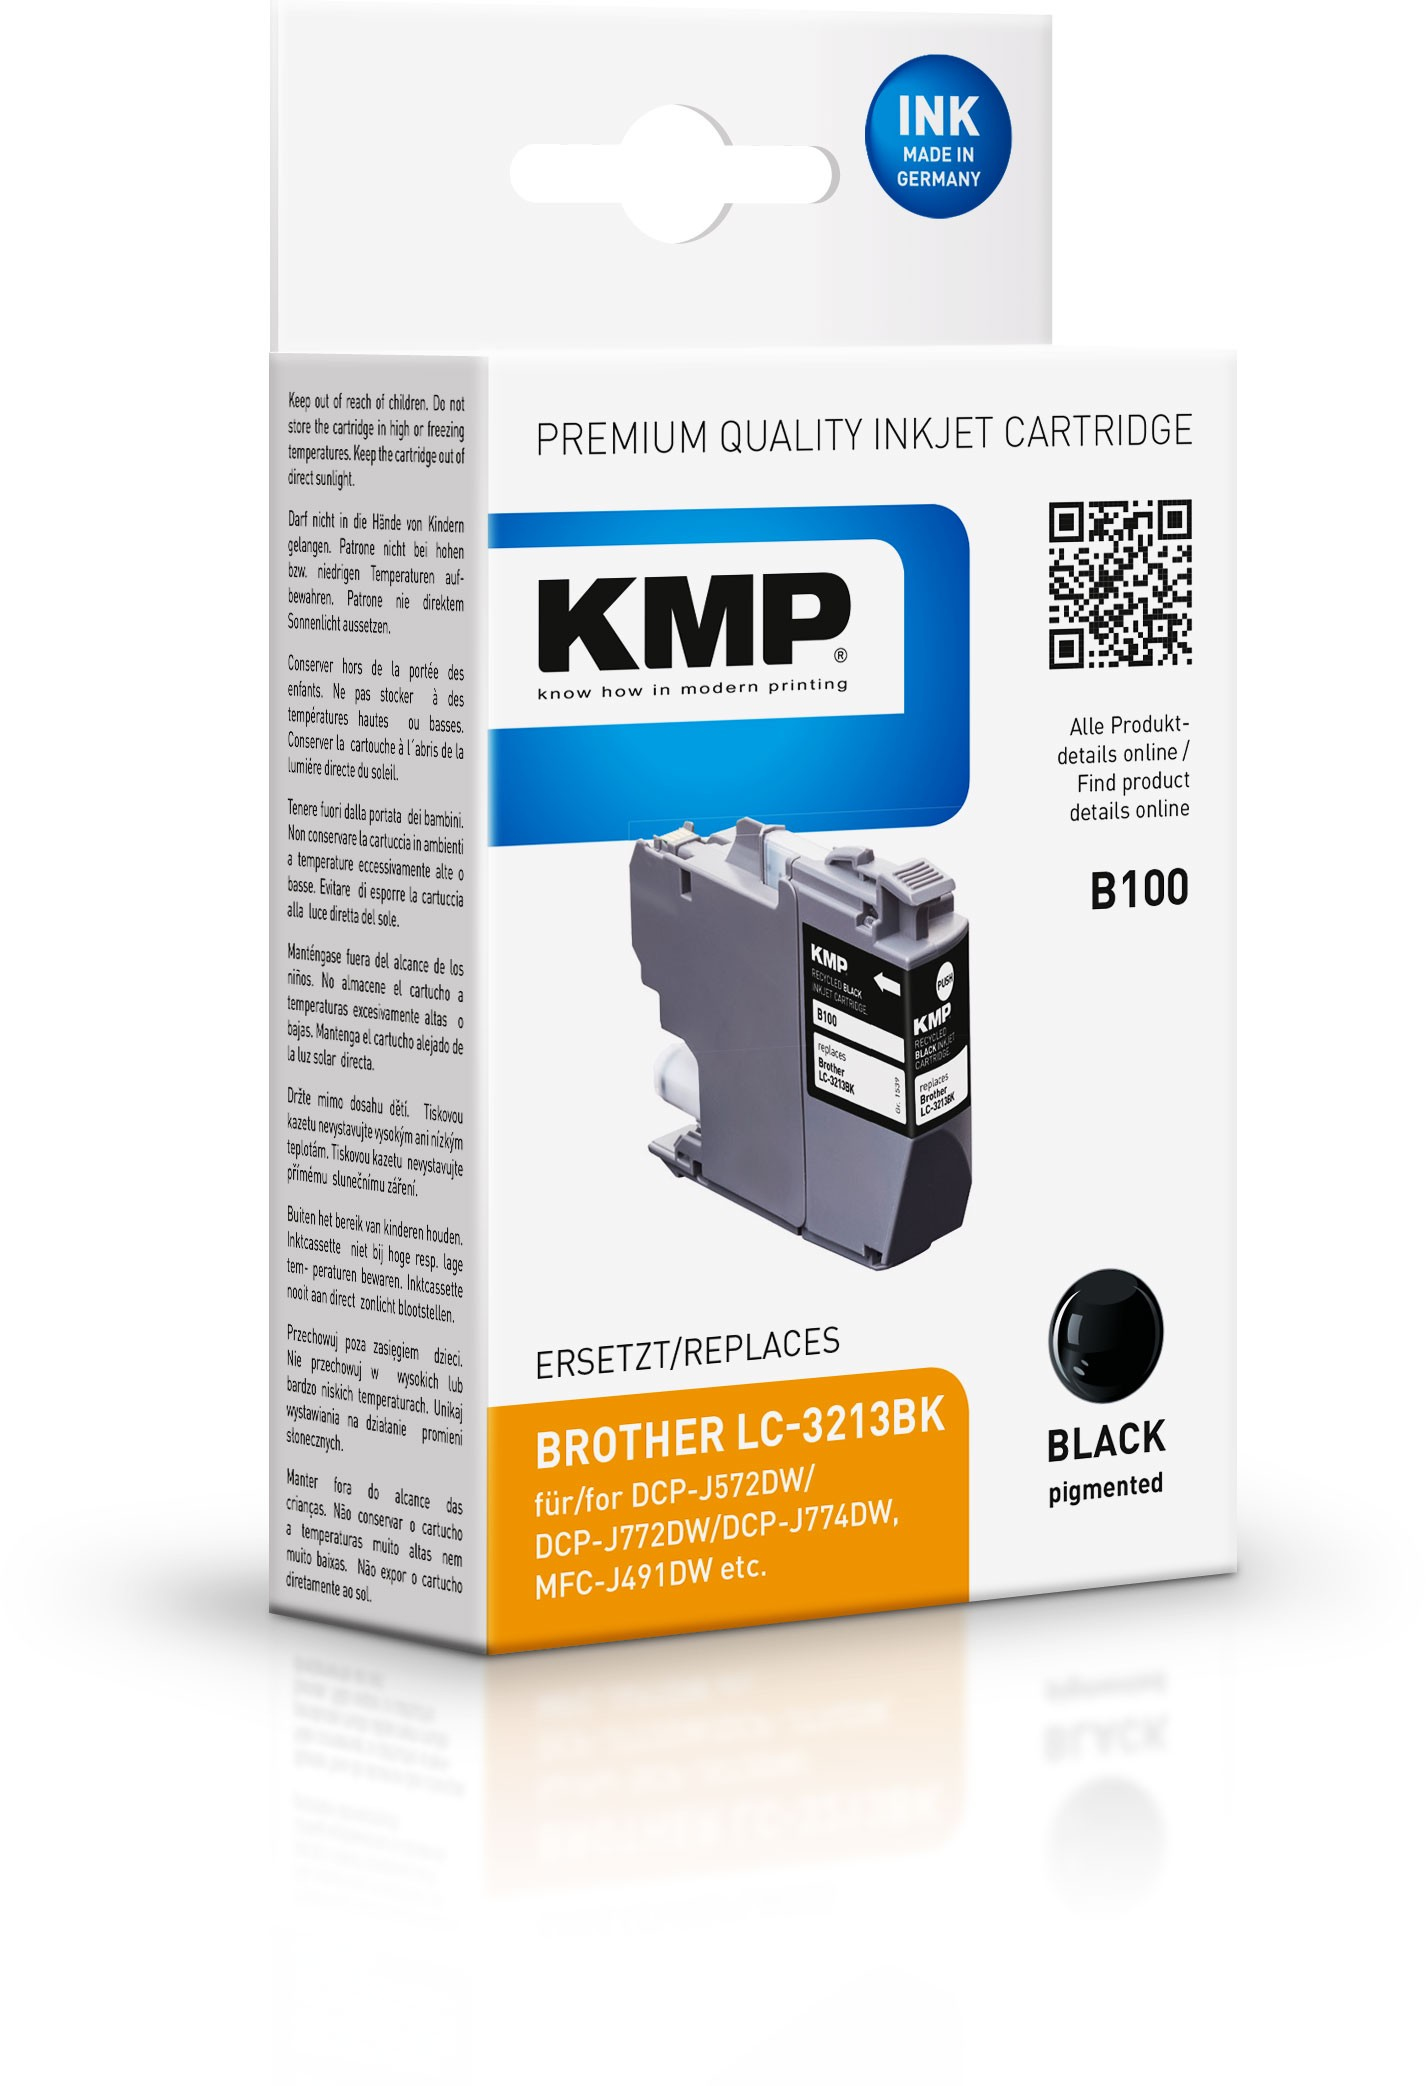 KMP 1539,4001 - Kompatibel - Schwarz - Brother - Einzelpackung - Brother DCP J 572 DW Brother DCP J 770 Series Brother DCP J 772 DNW Brother DCP J 772 DW Brother... - 1 Stück(e)